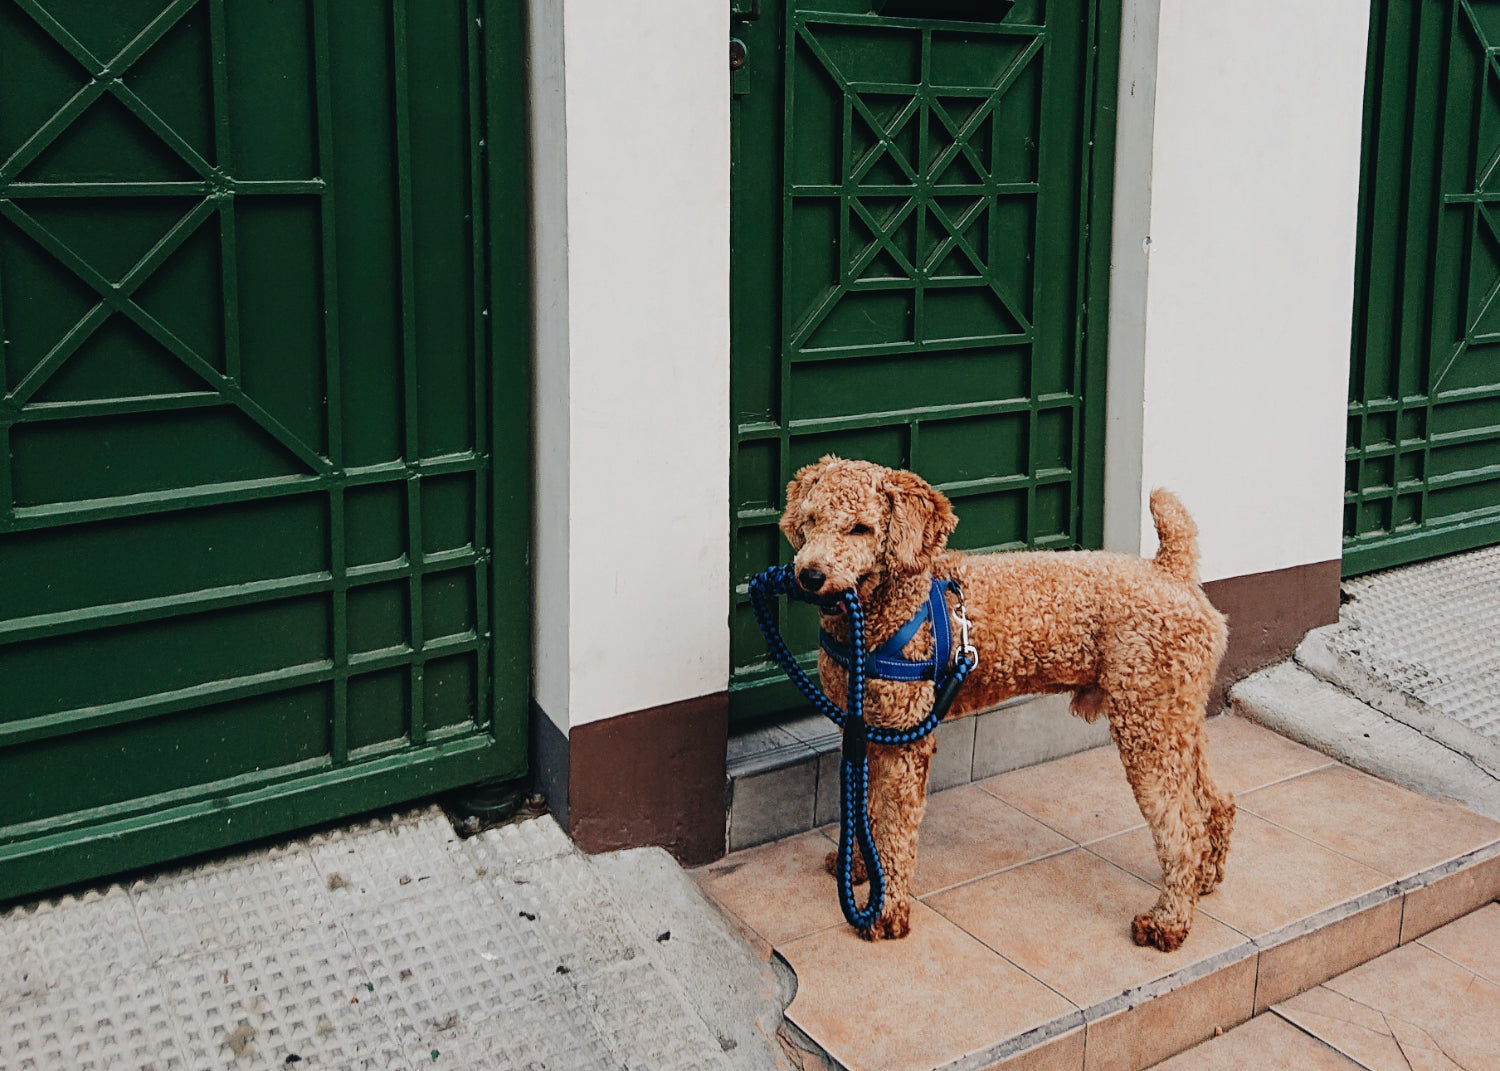 A dog on a leash waits outside a door